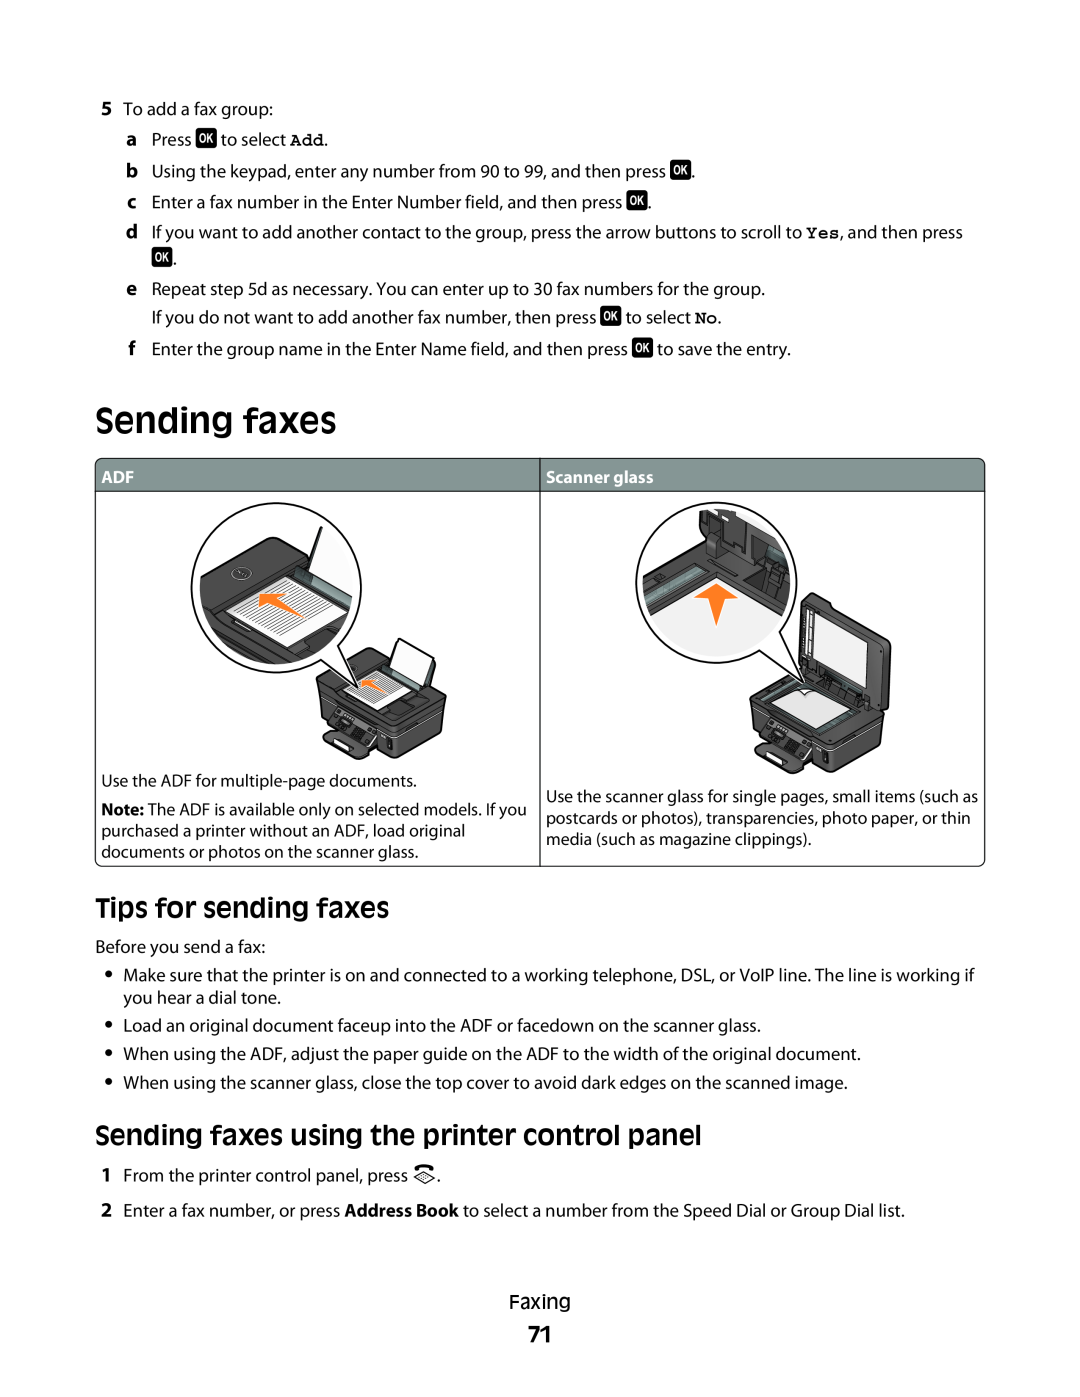 Dell V515W manual Tips for sending faxes, Sending faxes using the printer control panel 